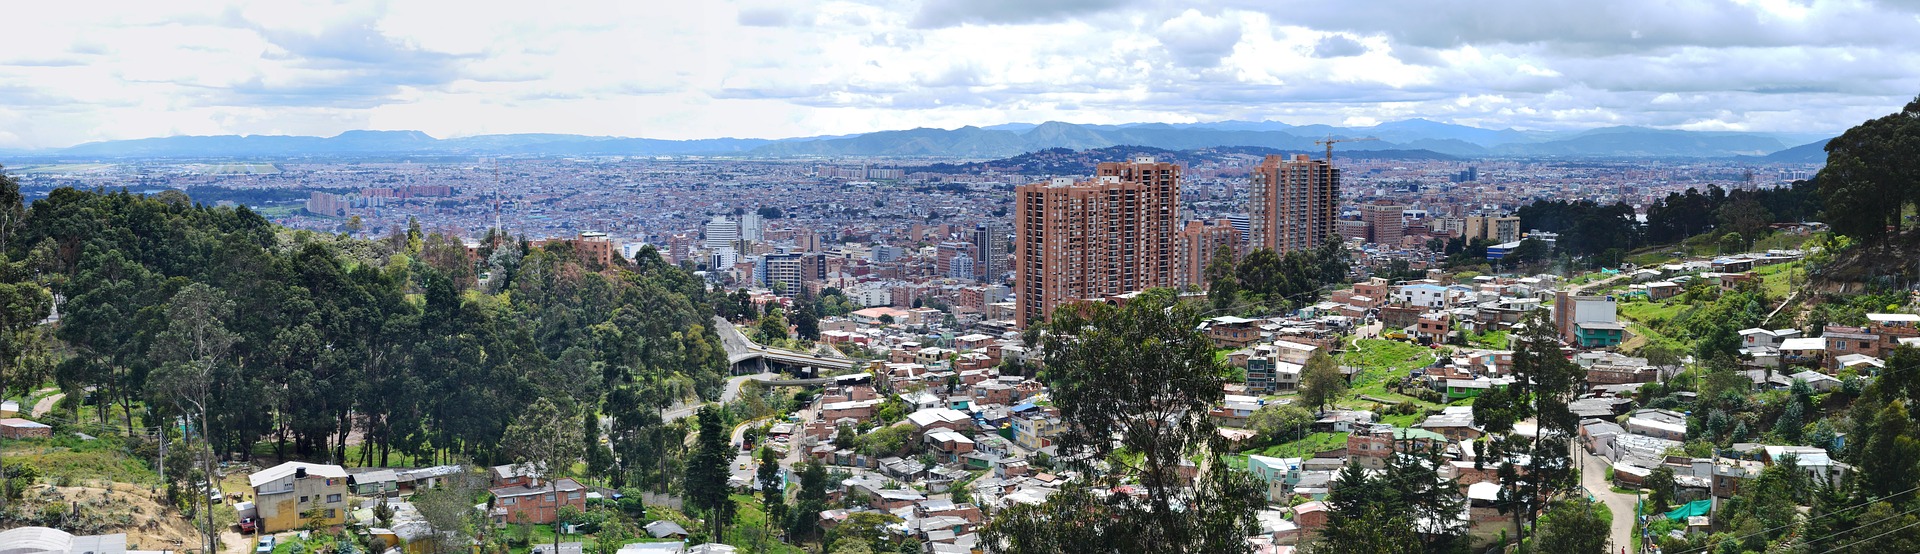 Mejoramiento integral de barrios en Bogotá se quedó corto